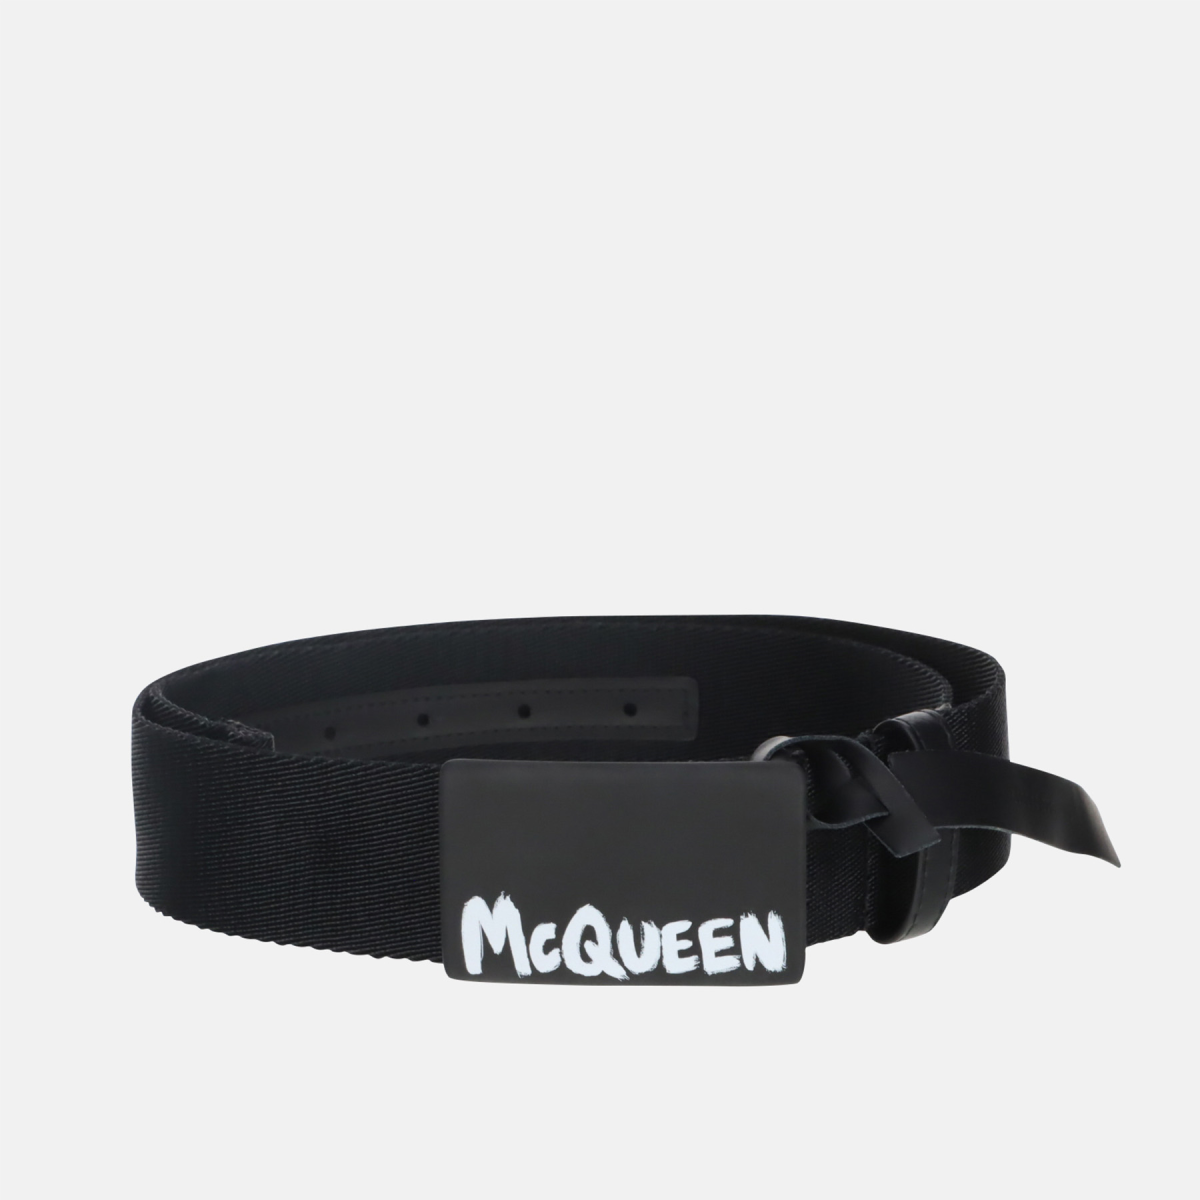 Alexander McQueen Belt